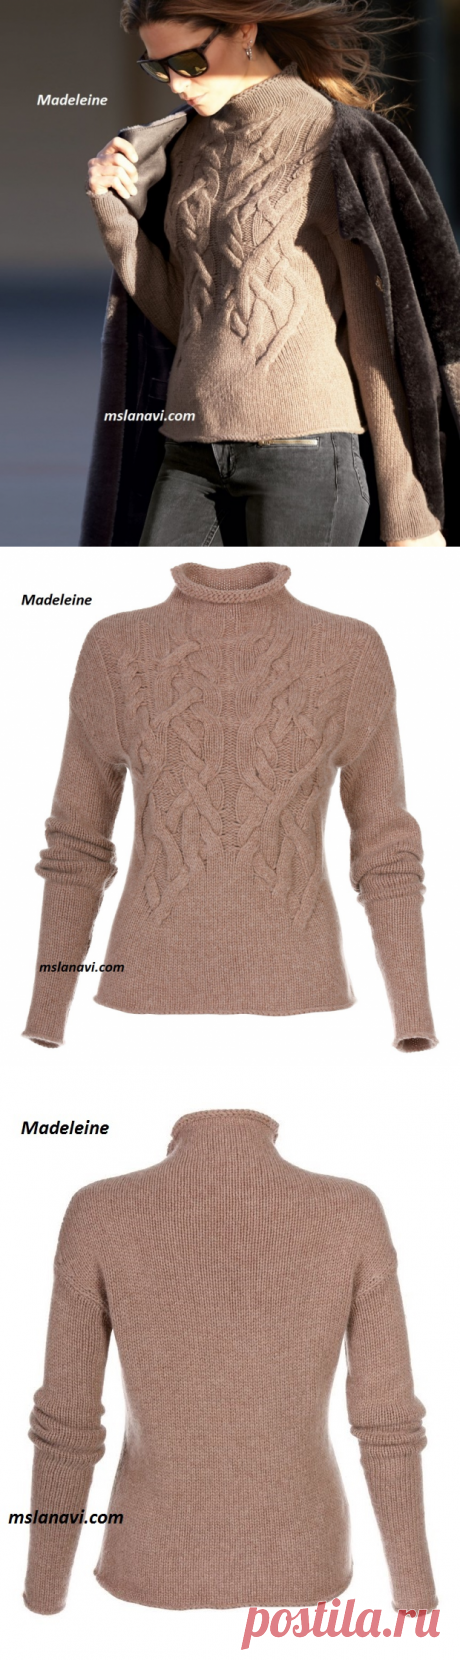 Модный пуловер от Madeleine | Вяжем с Лана Ви